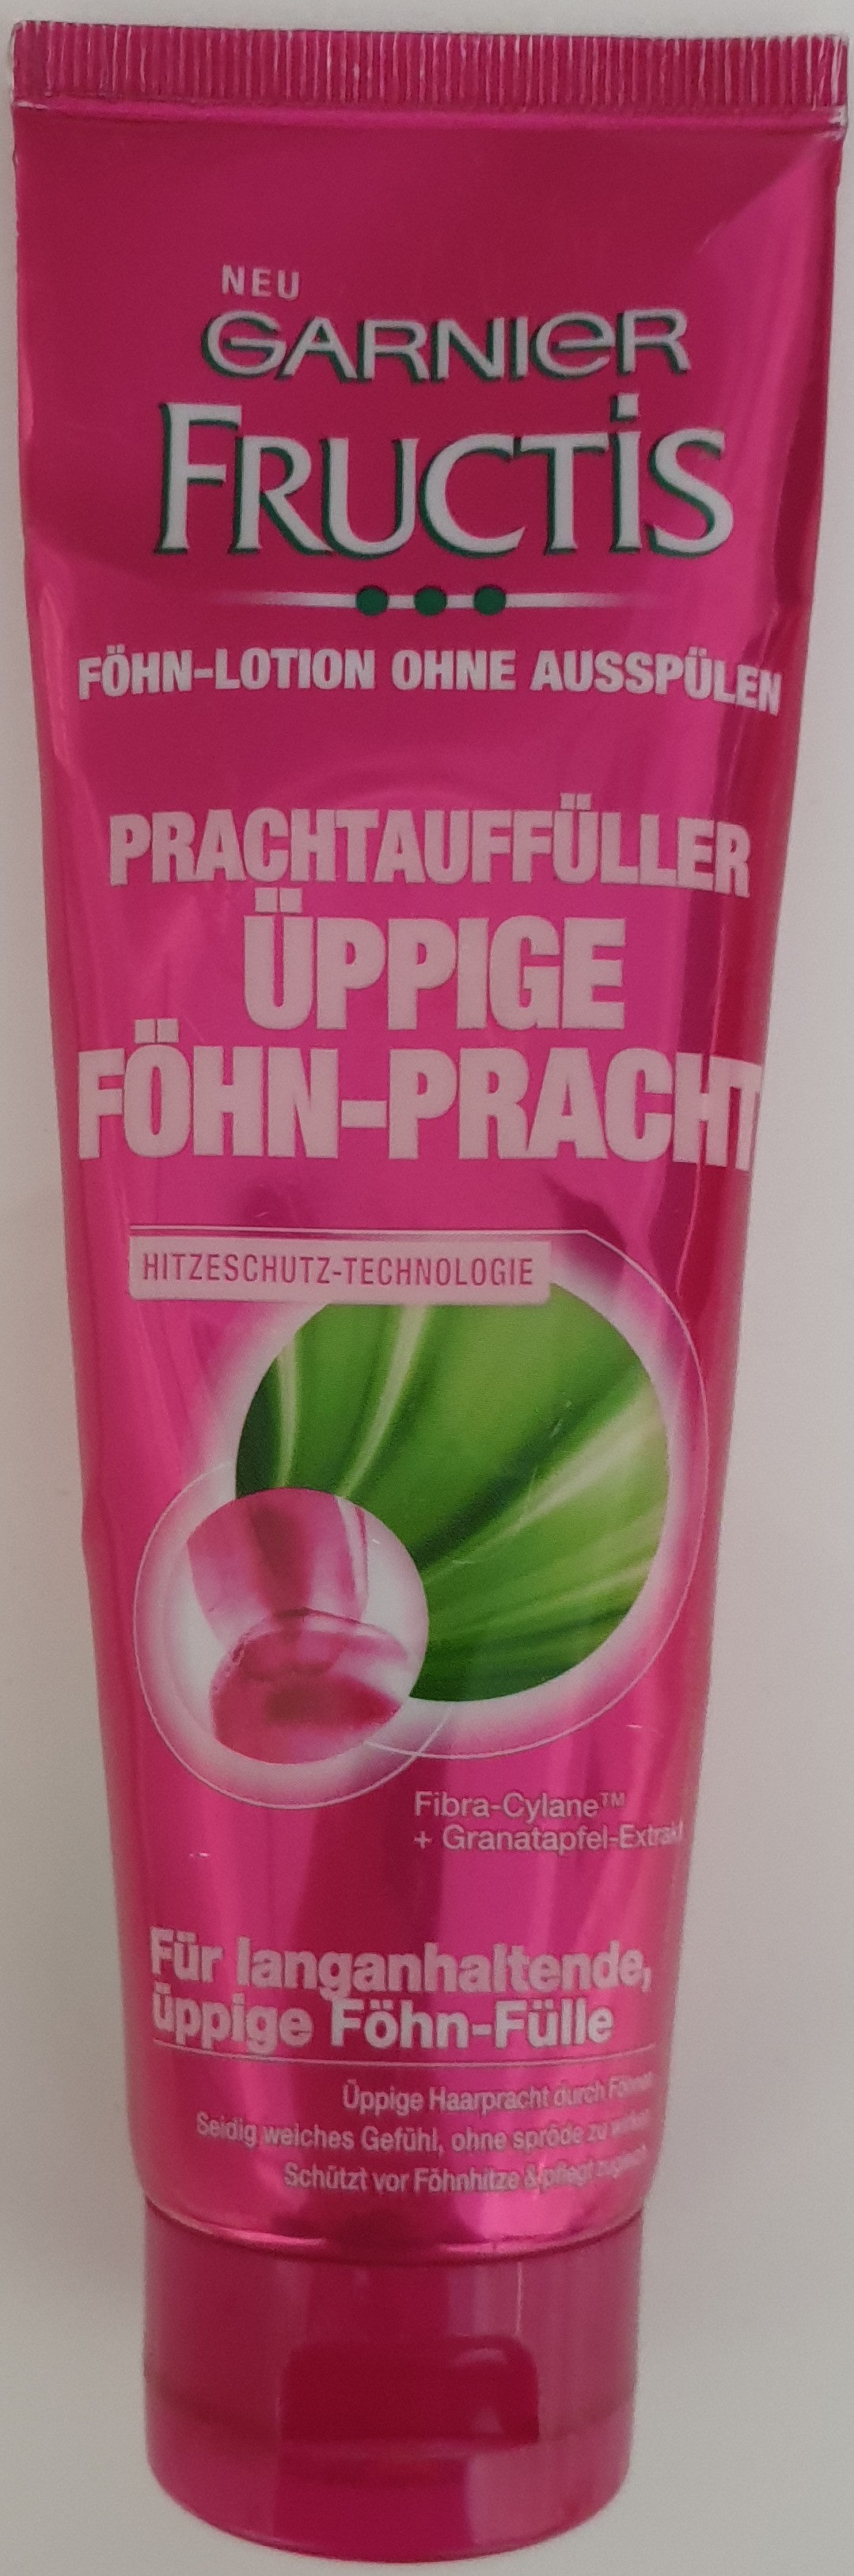 Fructis Prachtauffüller Föhn-Pracht - Produktas - de